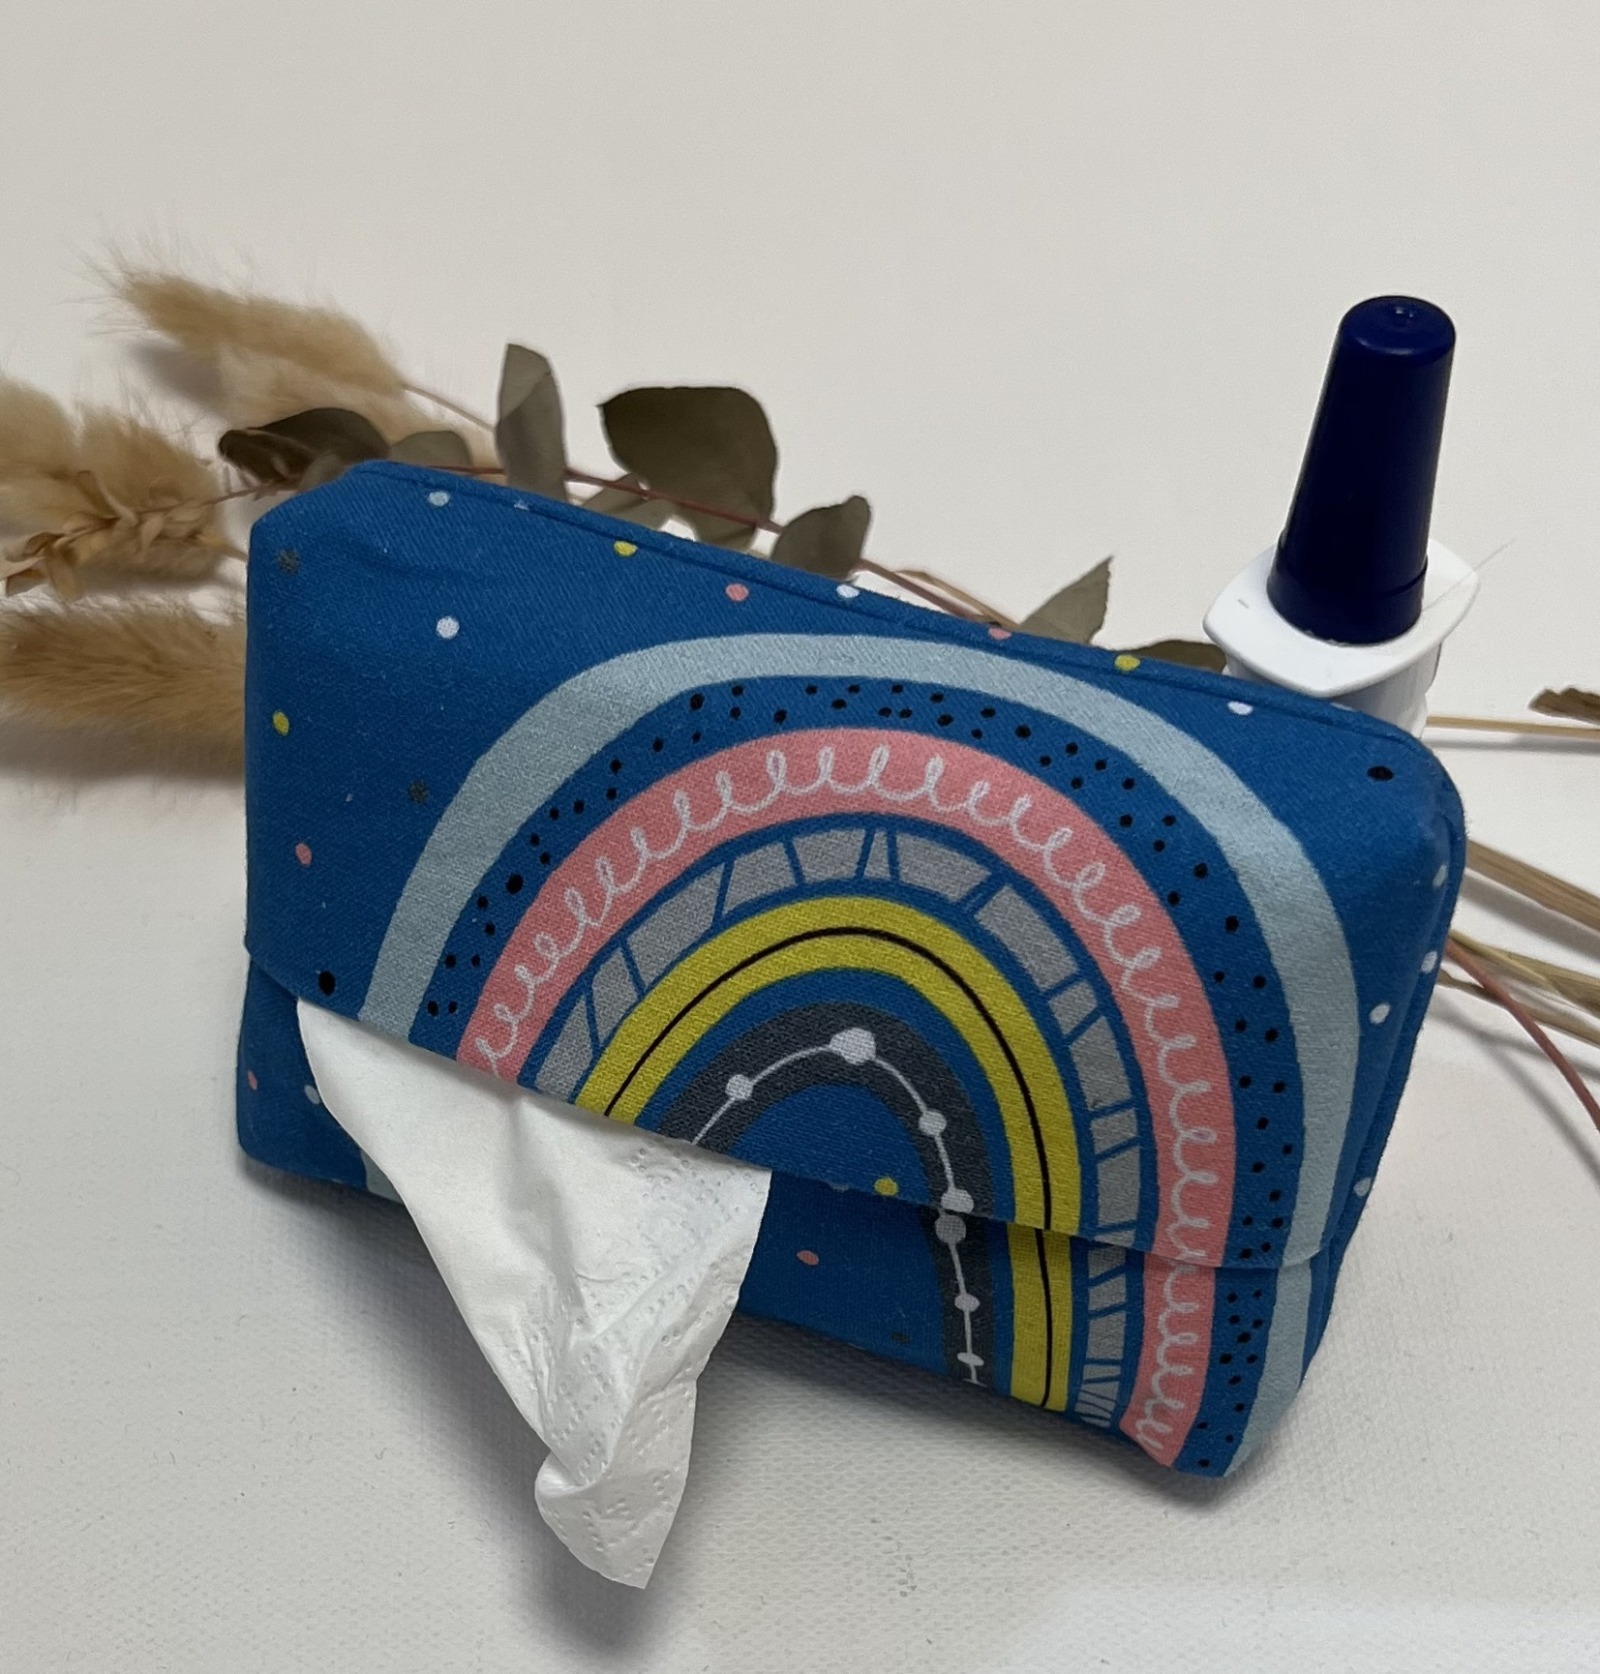 Regenbogen - Taschentuchfresser / Taschentuchbehälter für unterwegs / Tatüta 7